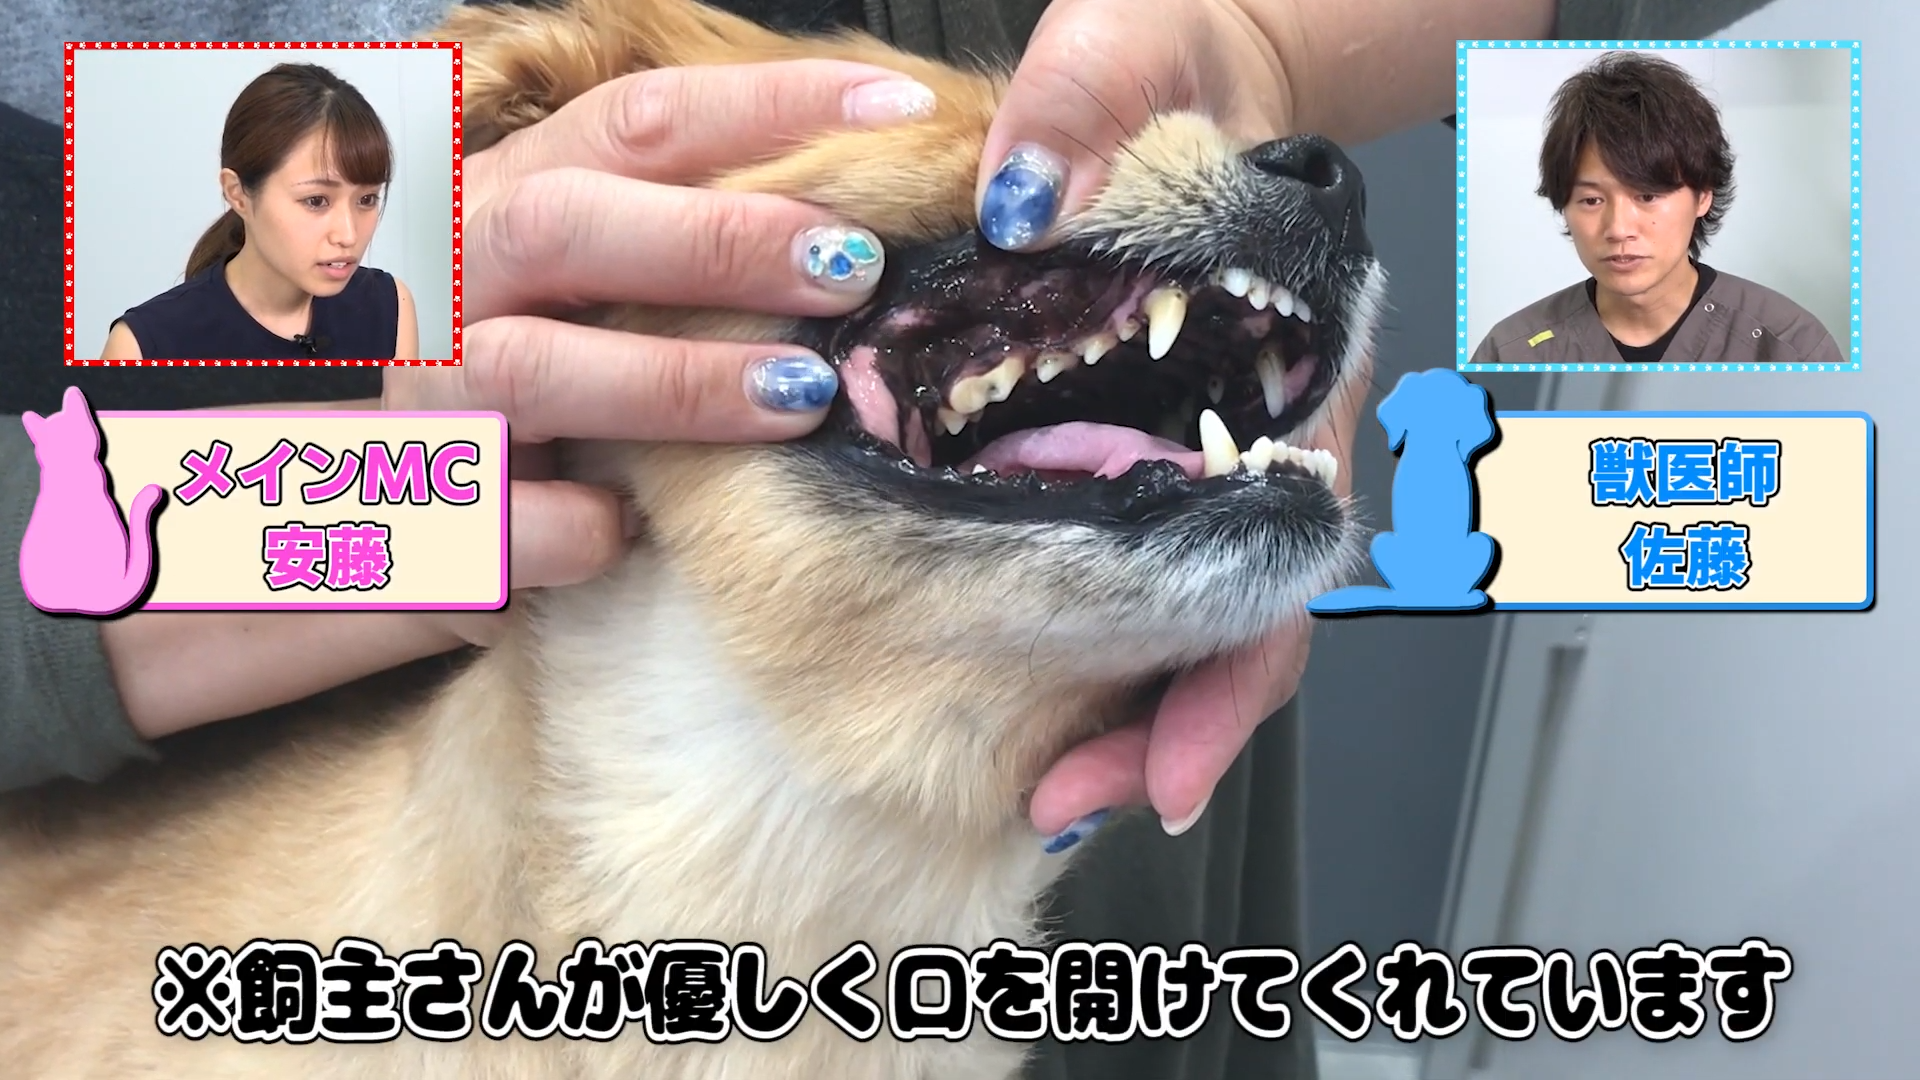 観覧注意 犬の歯が折れたら死に至る 対処法を学べ Vol 2 Wolves Hand動物病院グループ